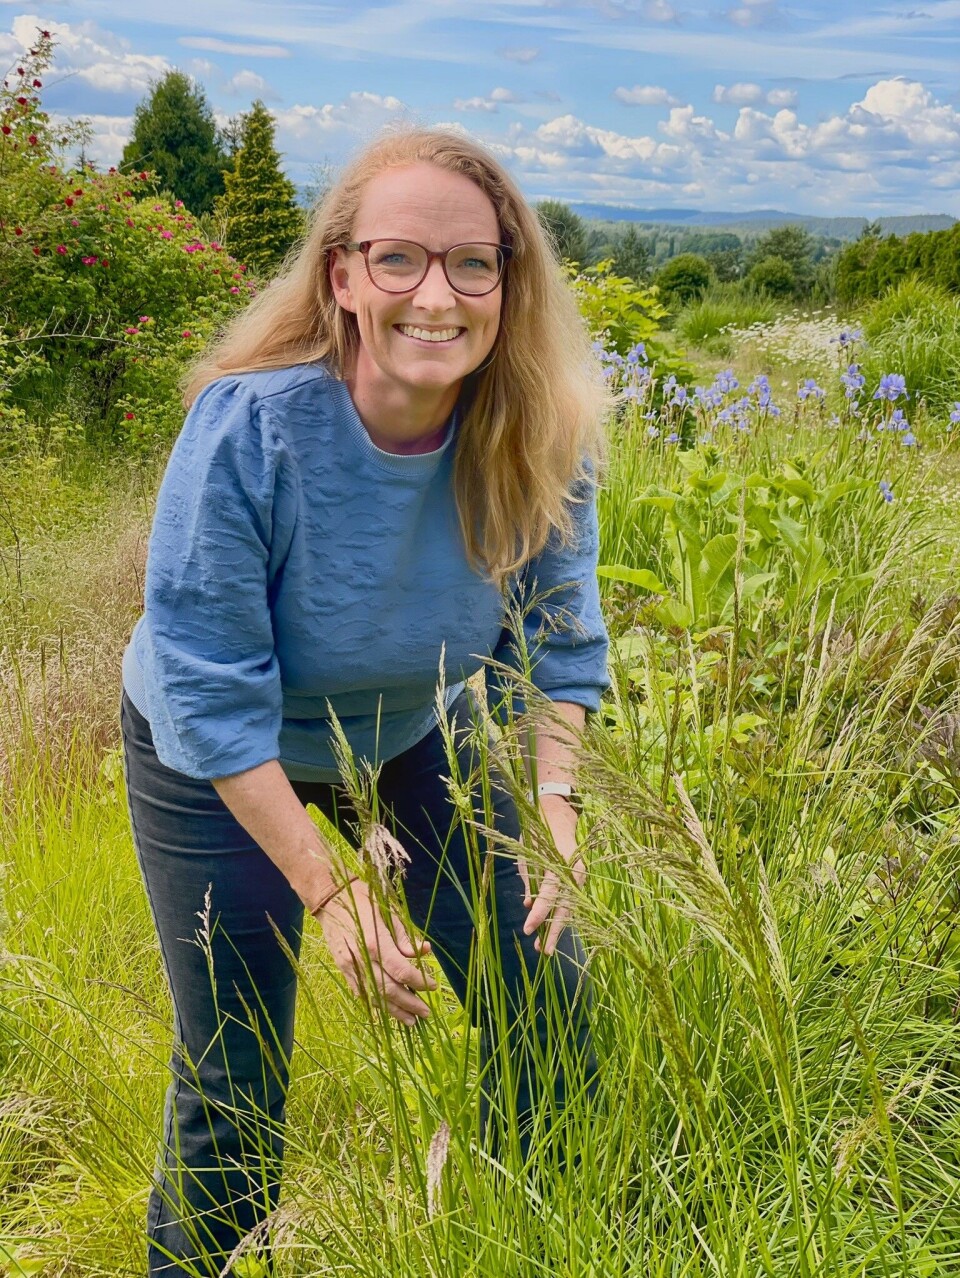 Biolog Camilla Lorange Lindberg står mellom høyt gress. Hun har langt, lyst hår, briller og blå genser. I bakgrunnen ser man blå blomster og høye trær.